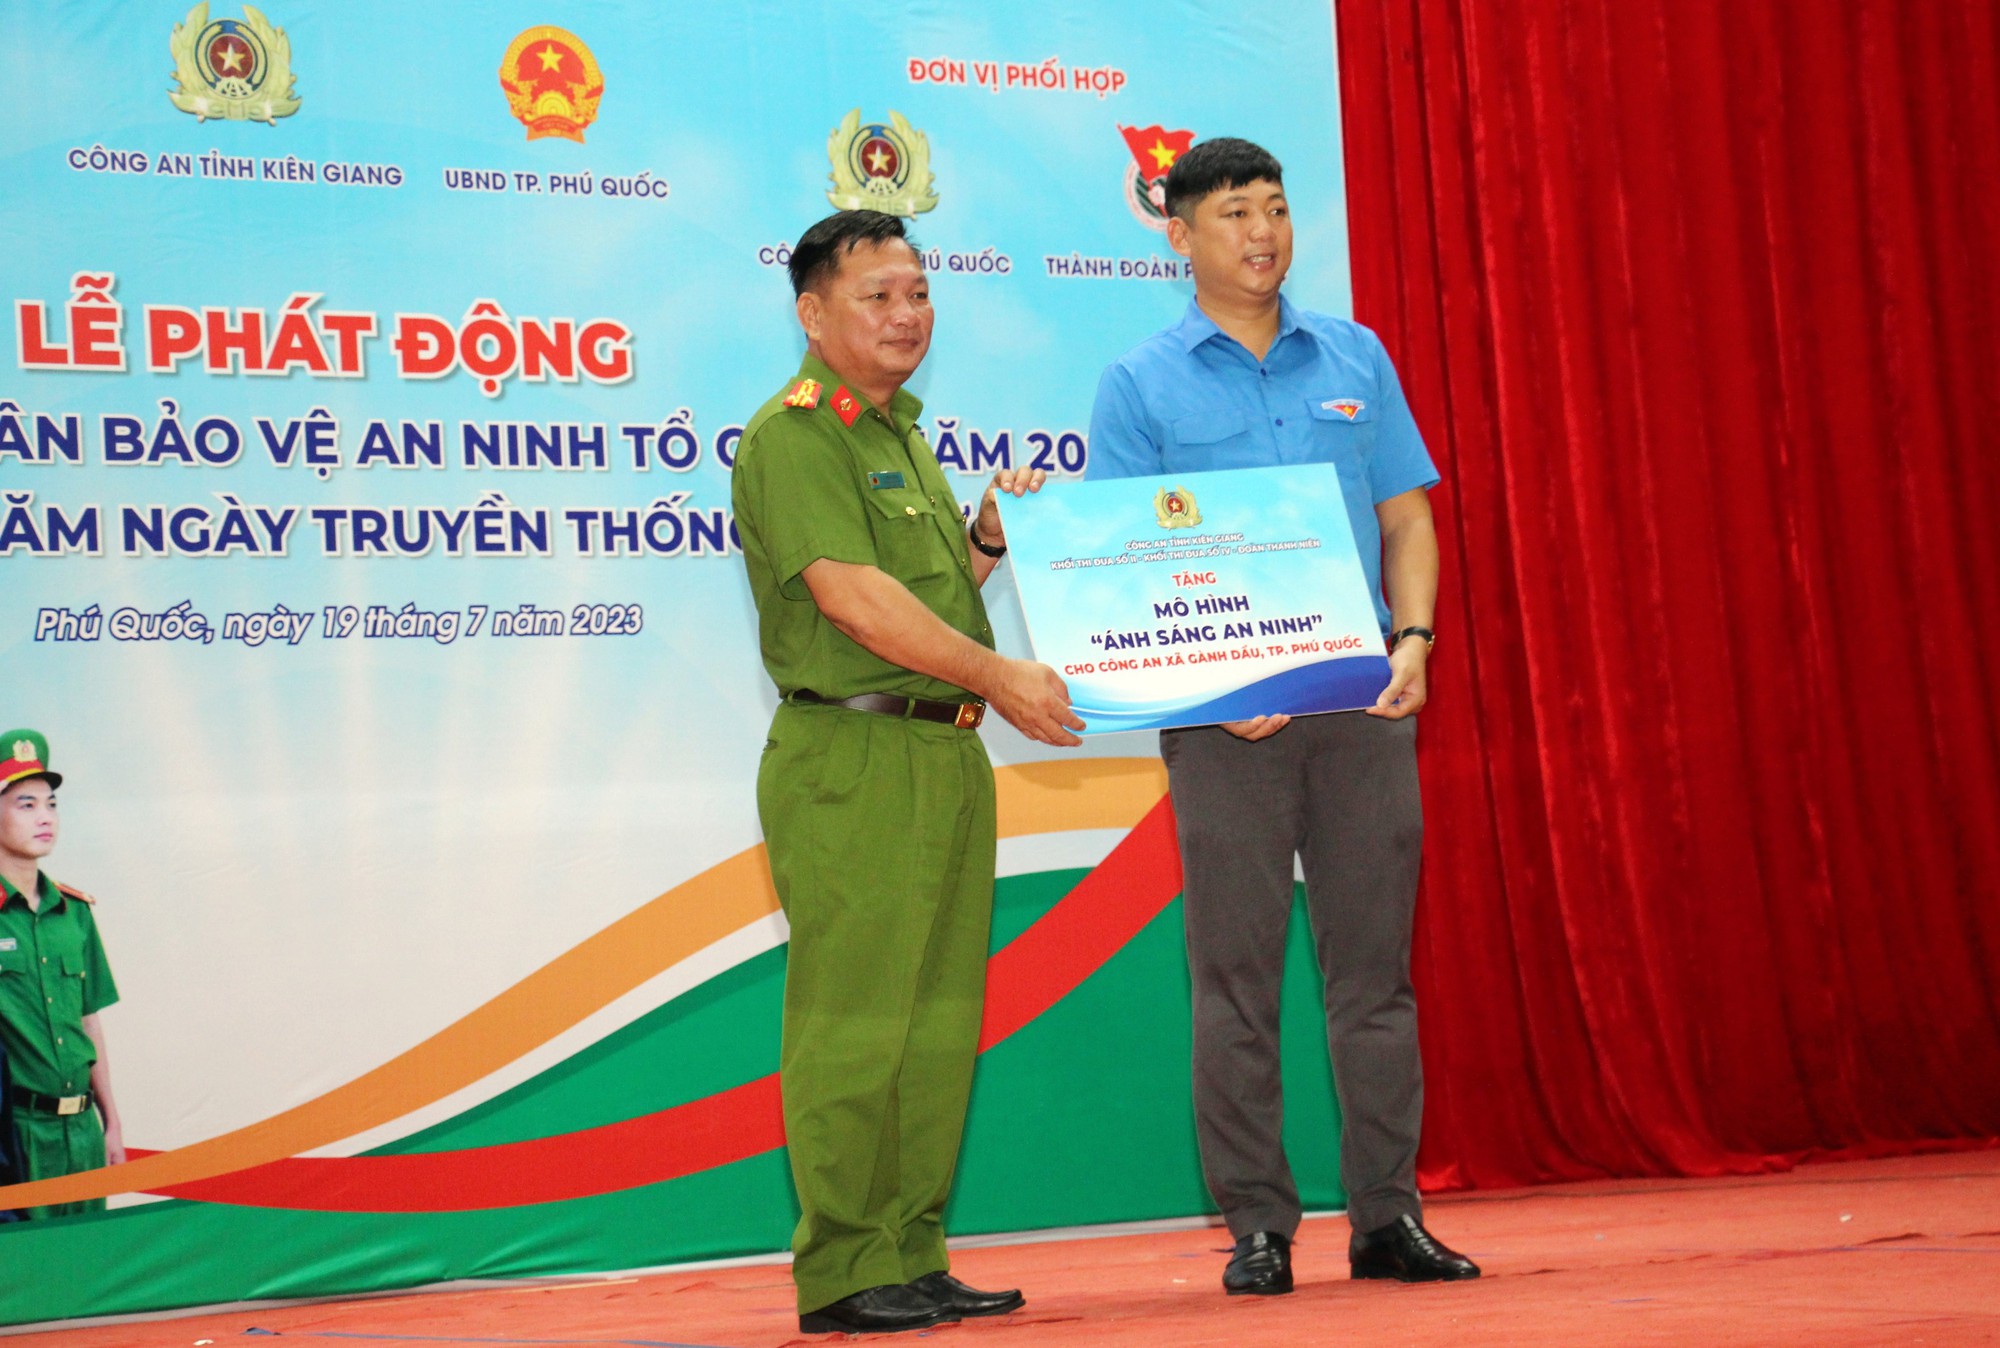 Công an tỉnh Kiên Giang tổ chức nhiều hoạt động tại Phú Quốc - Ảnh 9.